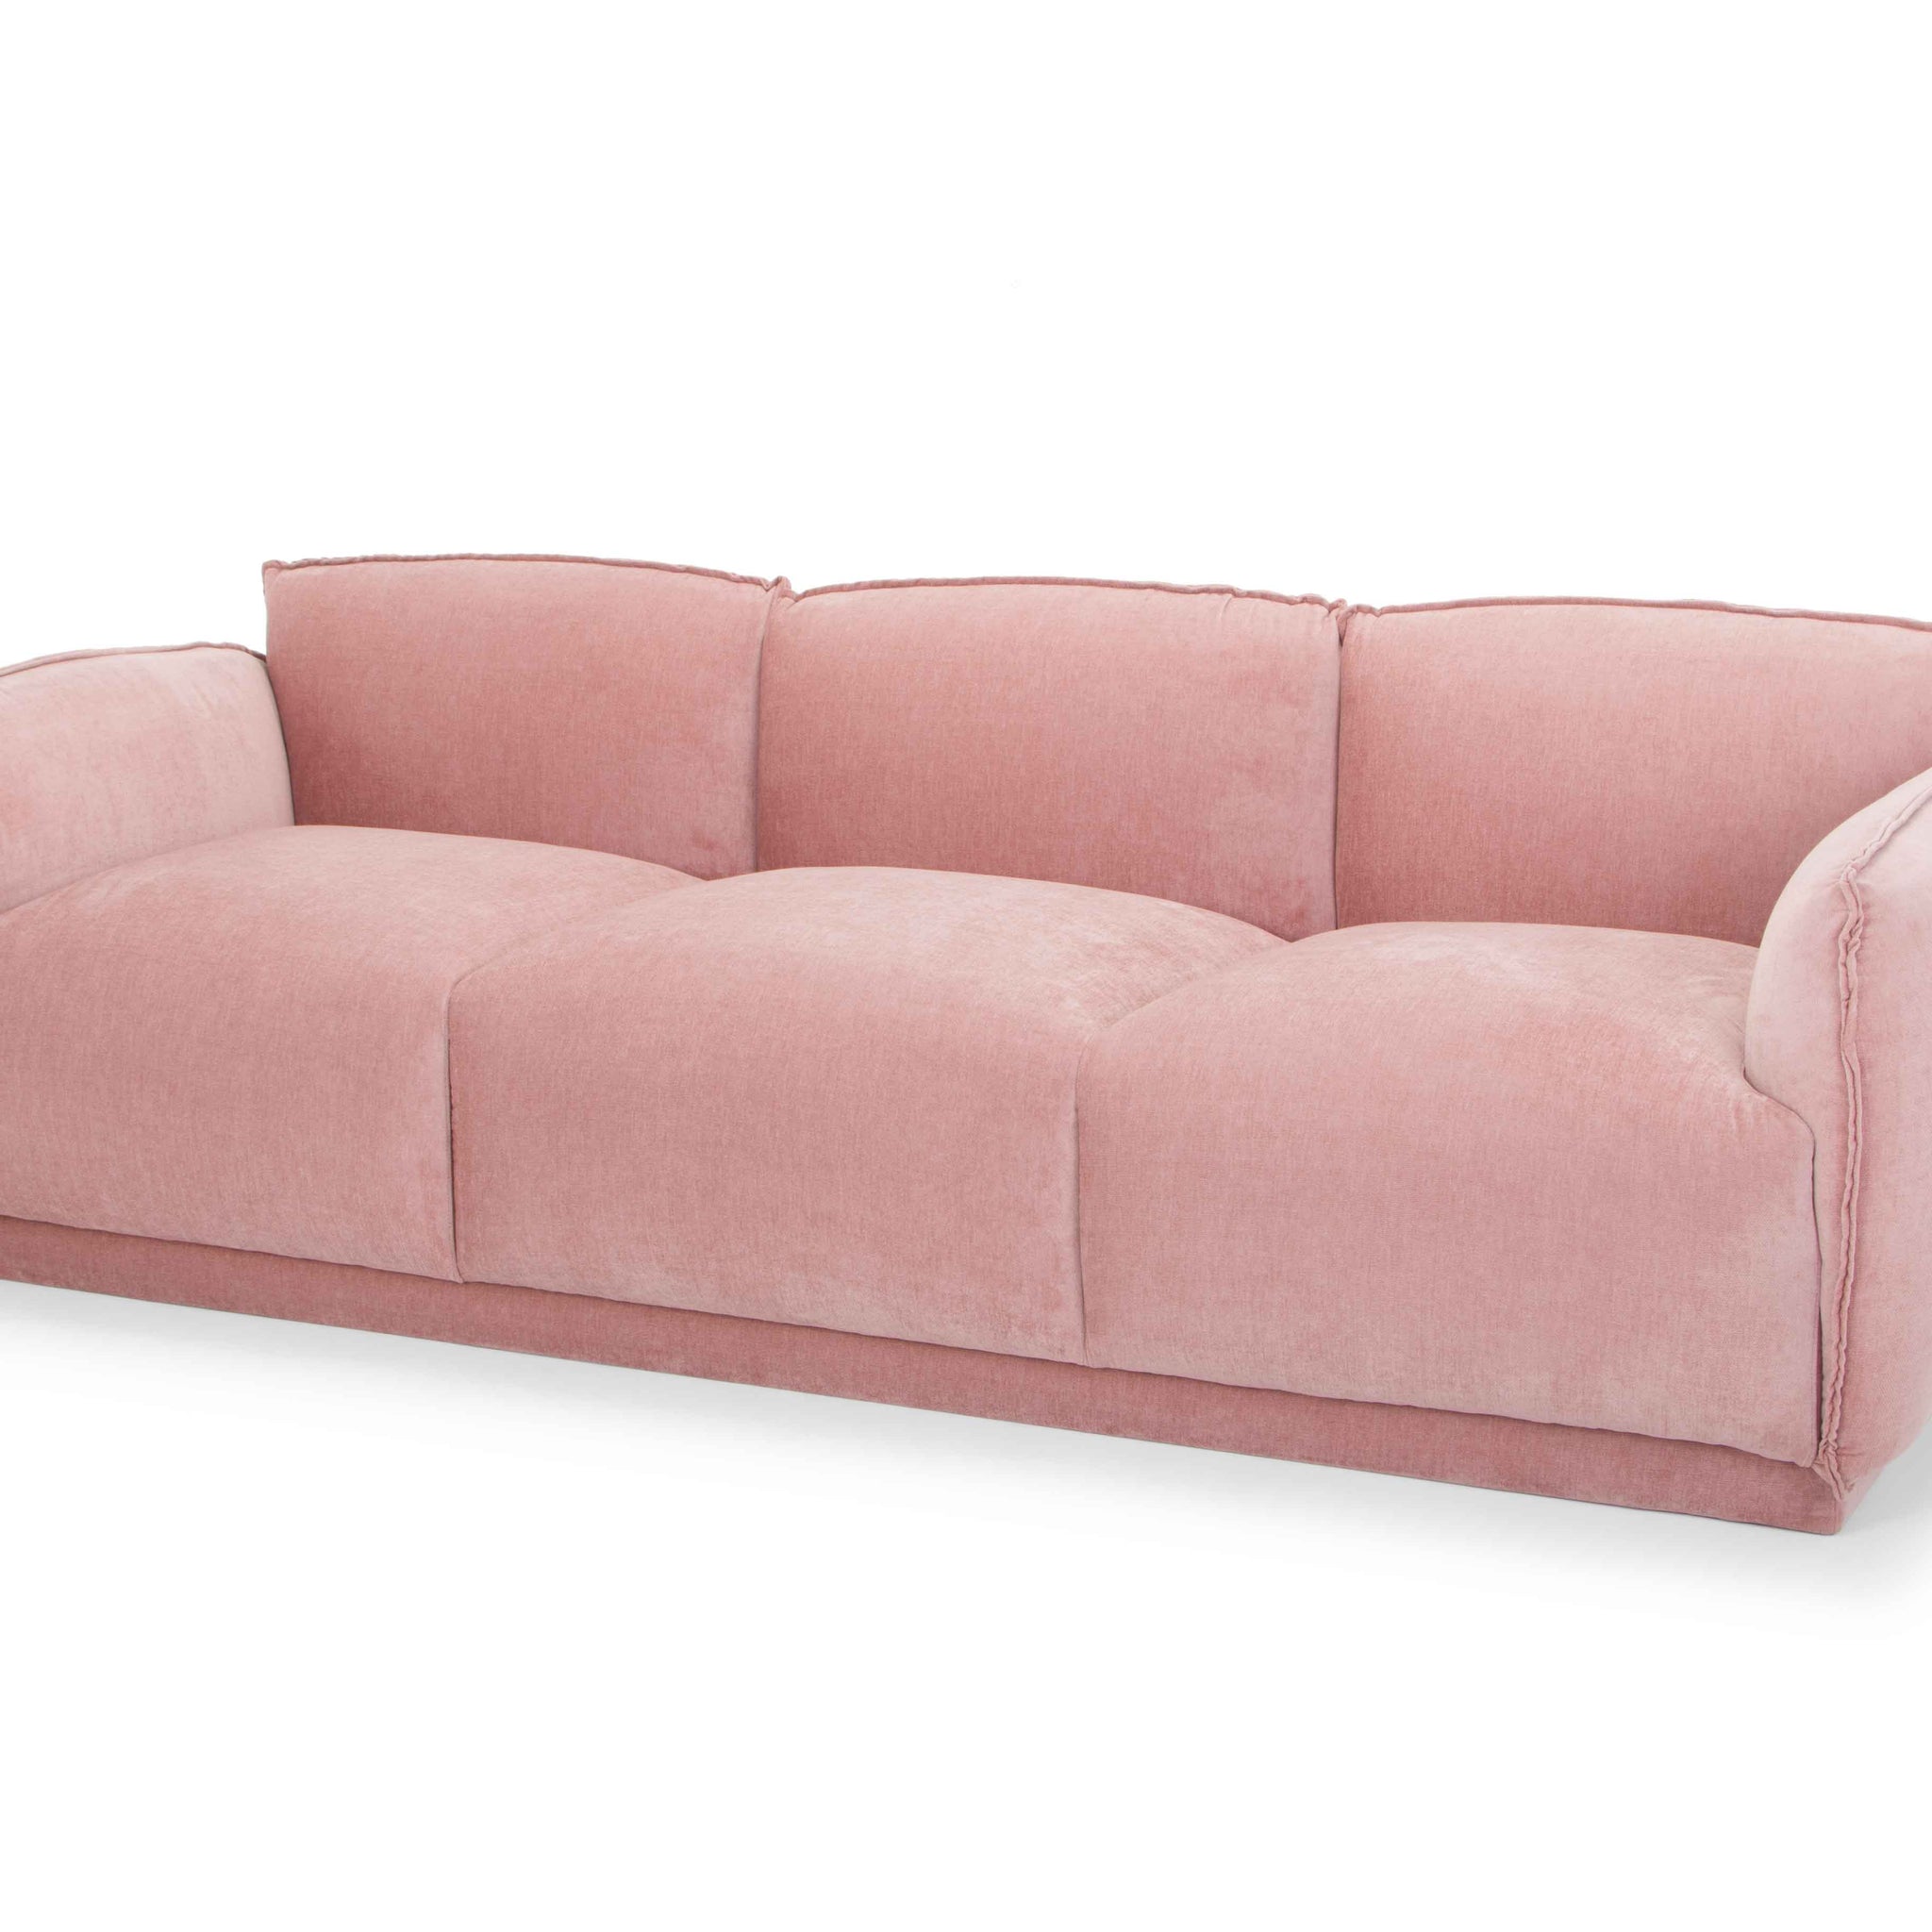 Ella 3 Seater Fabric Sofa - Dusty Blush